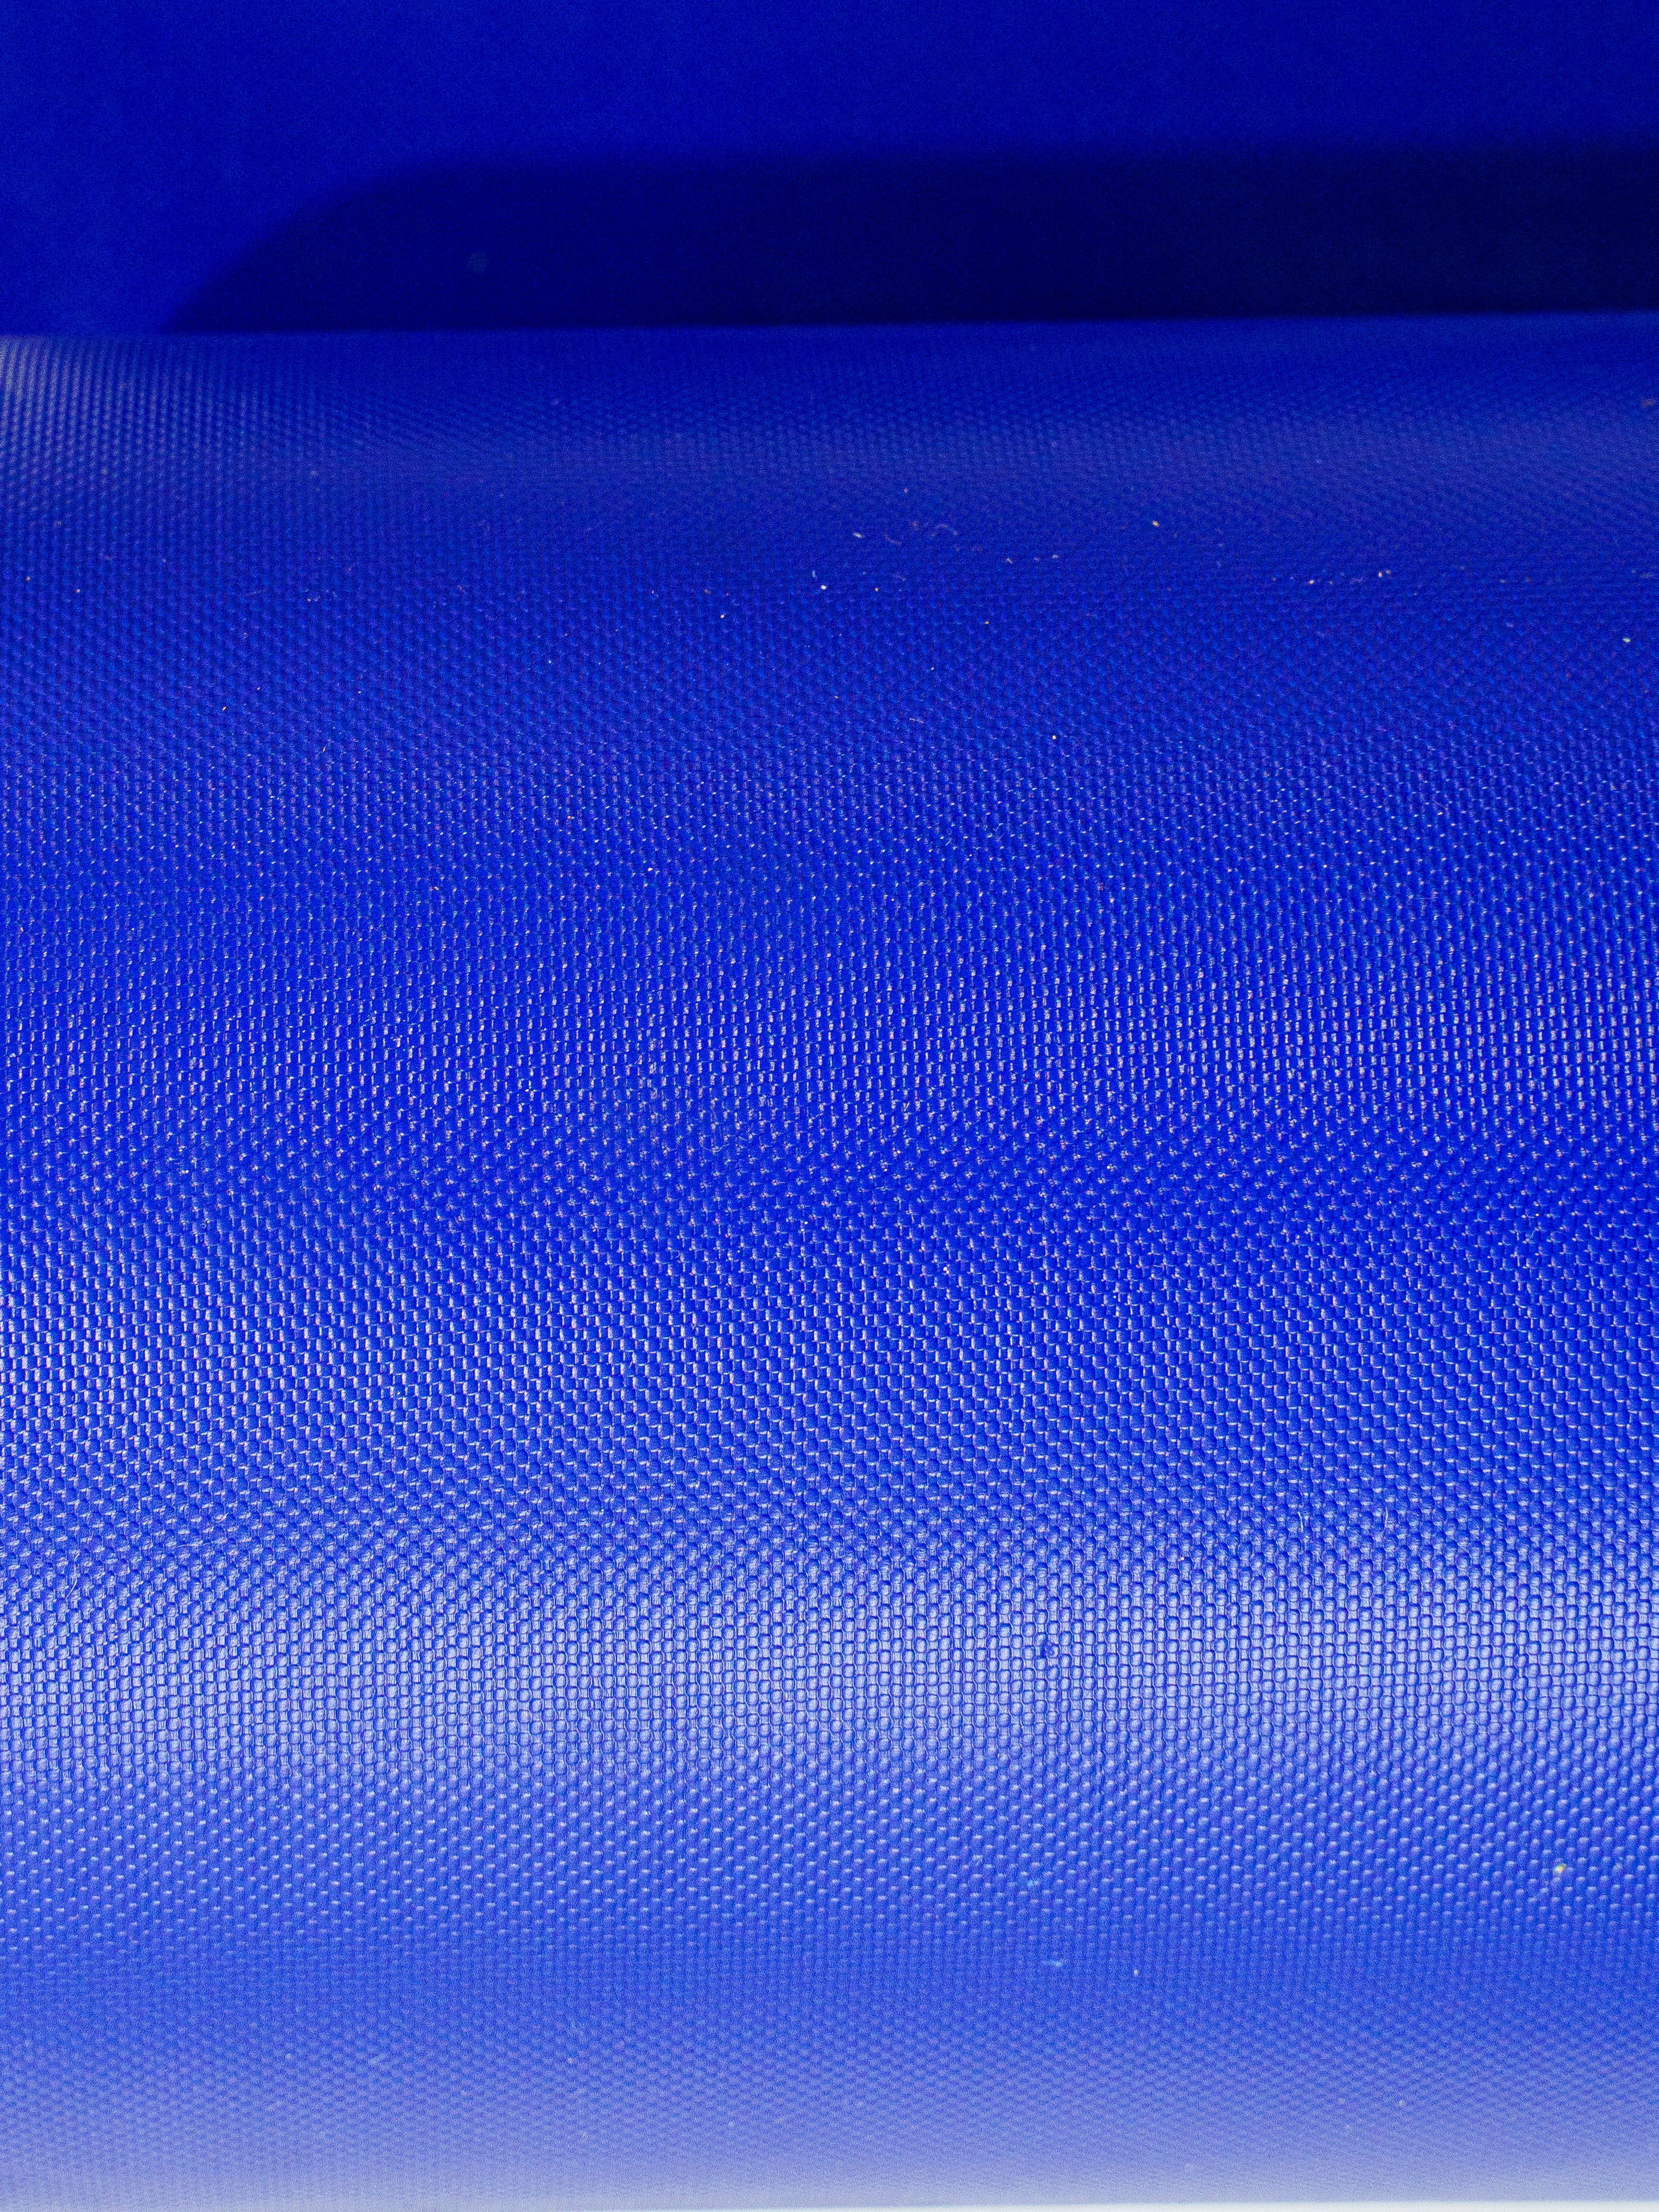 Плёнка ПВХ тонированная синяя. Стеновой протектор стандарт 30мм ПВХ-ткань 630гр/м2 НПЭ 22кг/м3. Ткань ПВХ голубая -. Стеновой протектор стандарт 30мм ПВХ-ткань 630гр/м2 НПЭ 22кг/м3 цена. Пленка пвх голубая